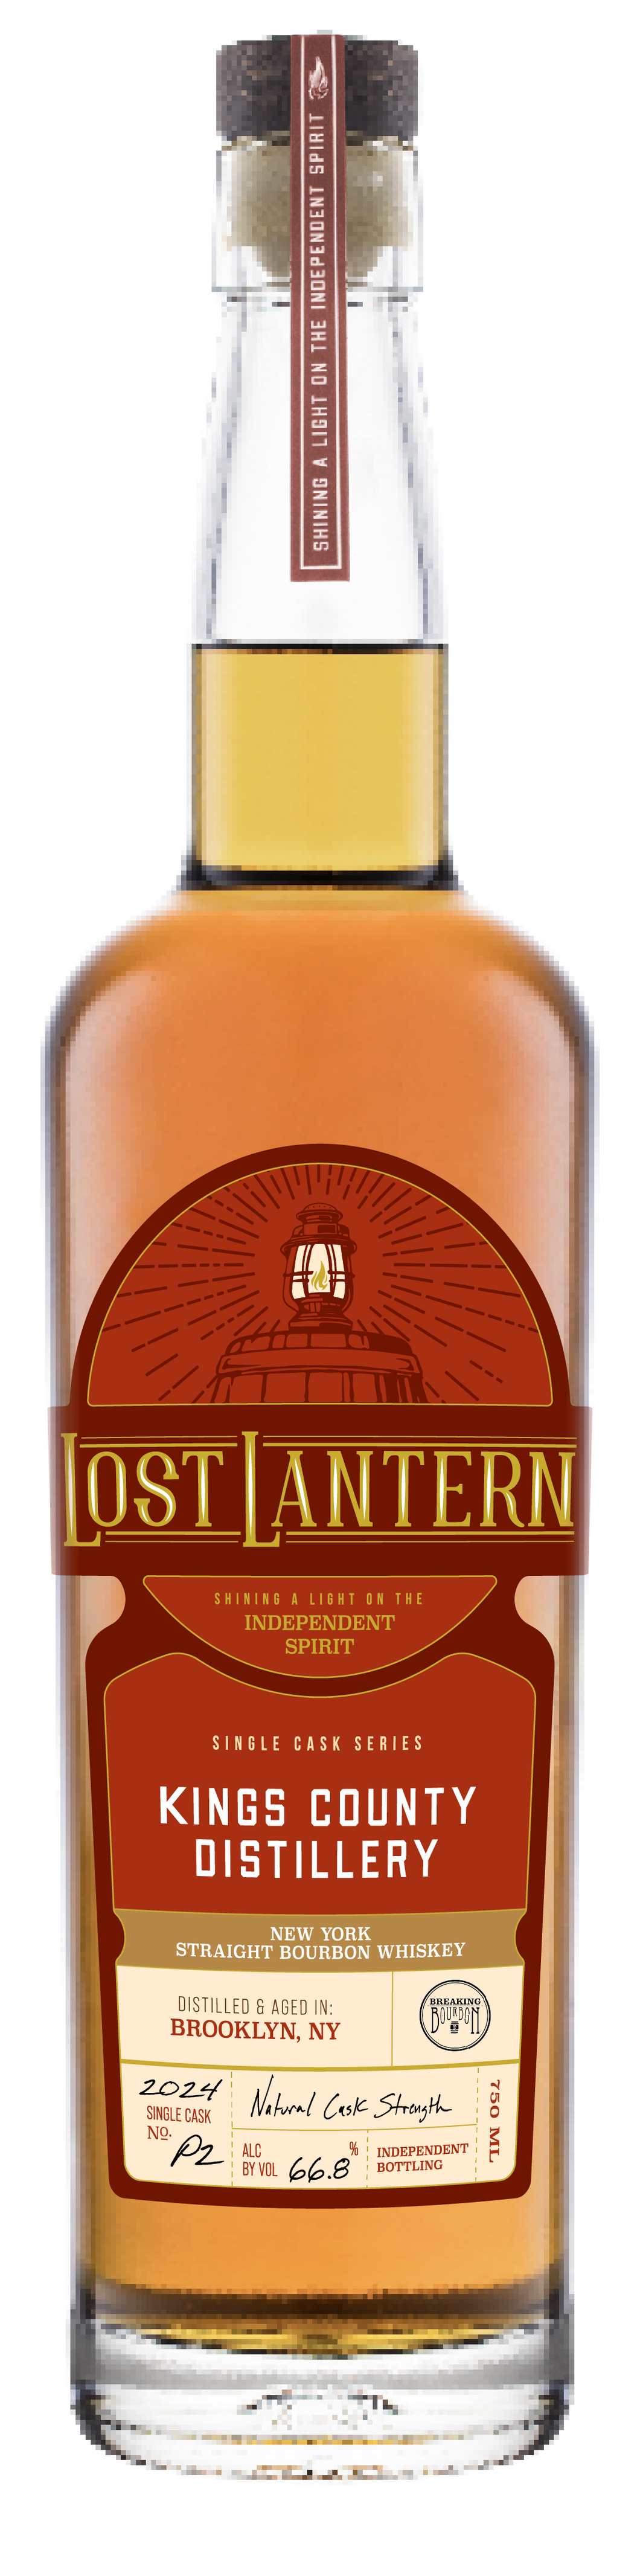 Lost Lantern Kings County Bourbon Private Cask #2 - Breaking Bourbon